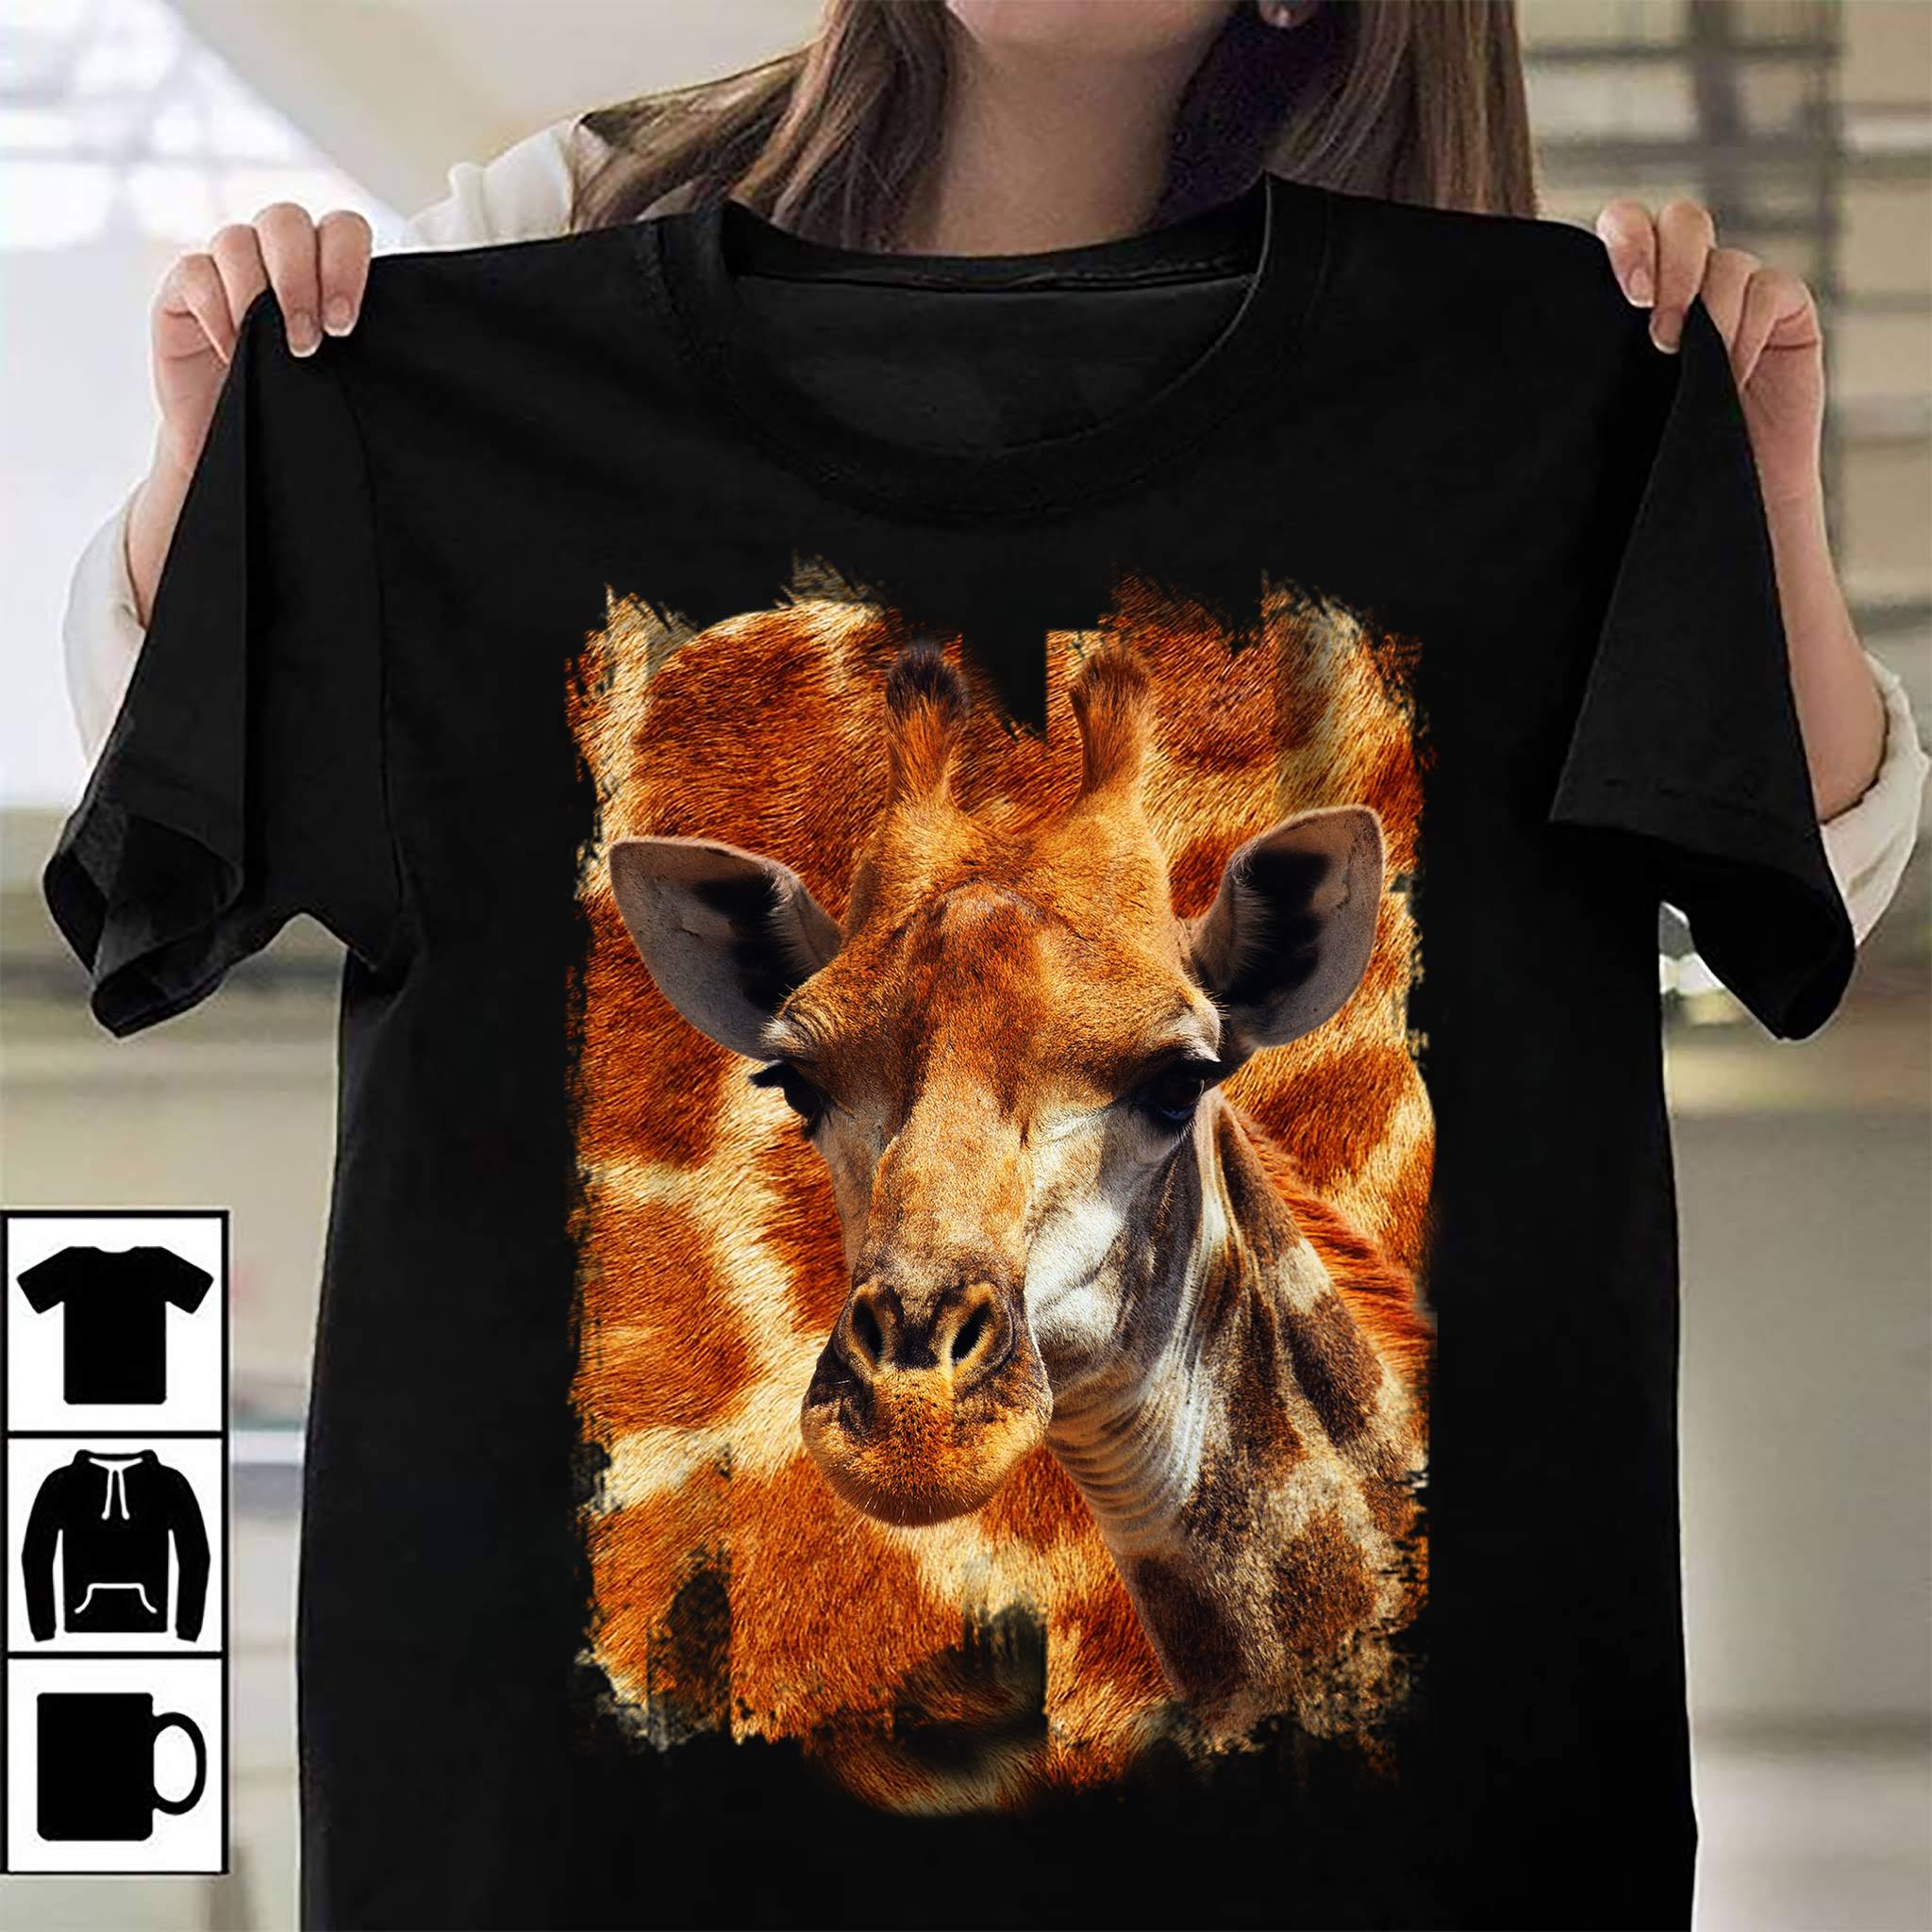 Giraffe lover - T-shirt for who loves giraffe